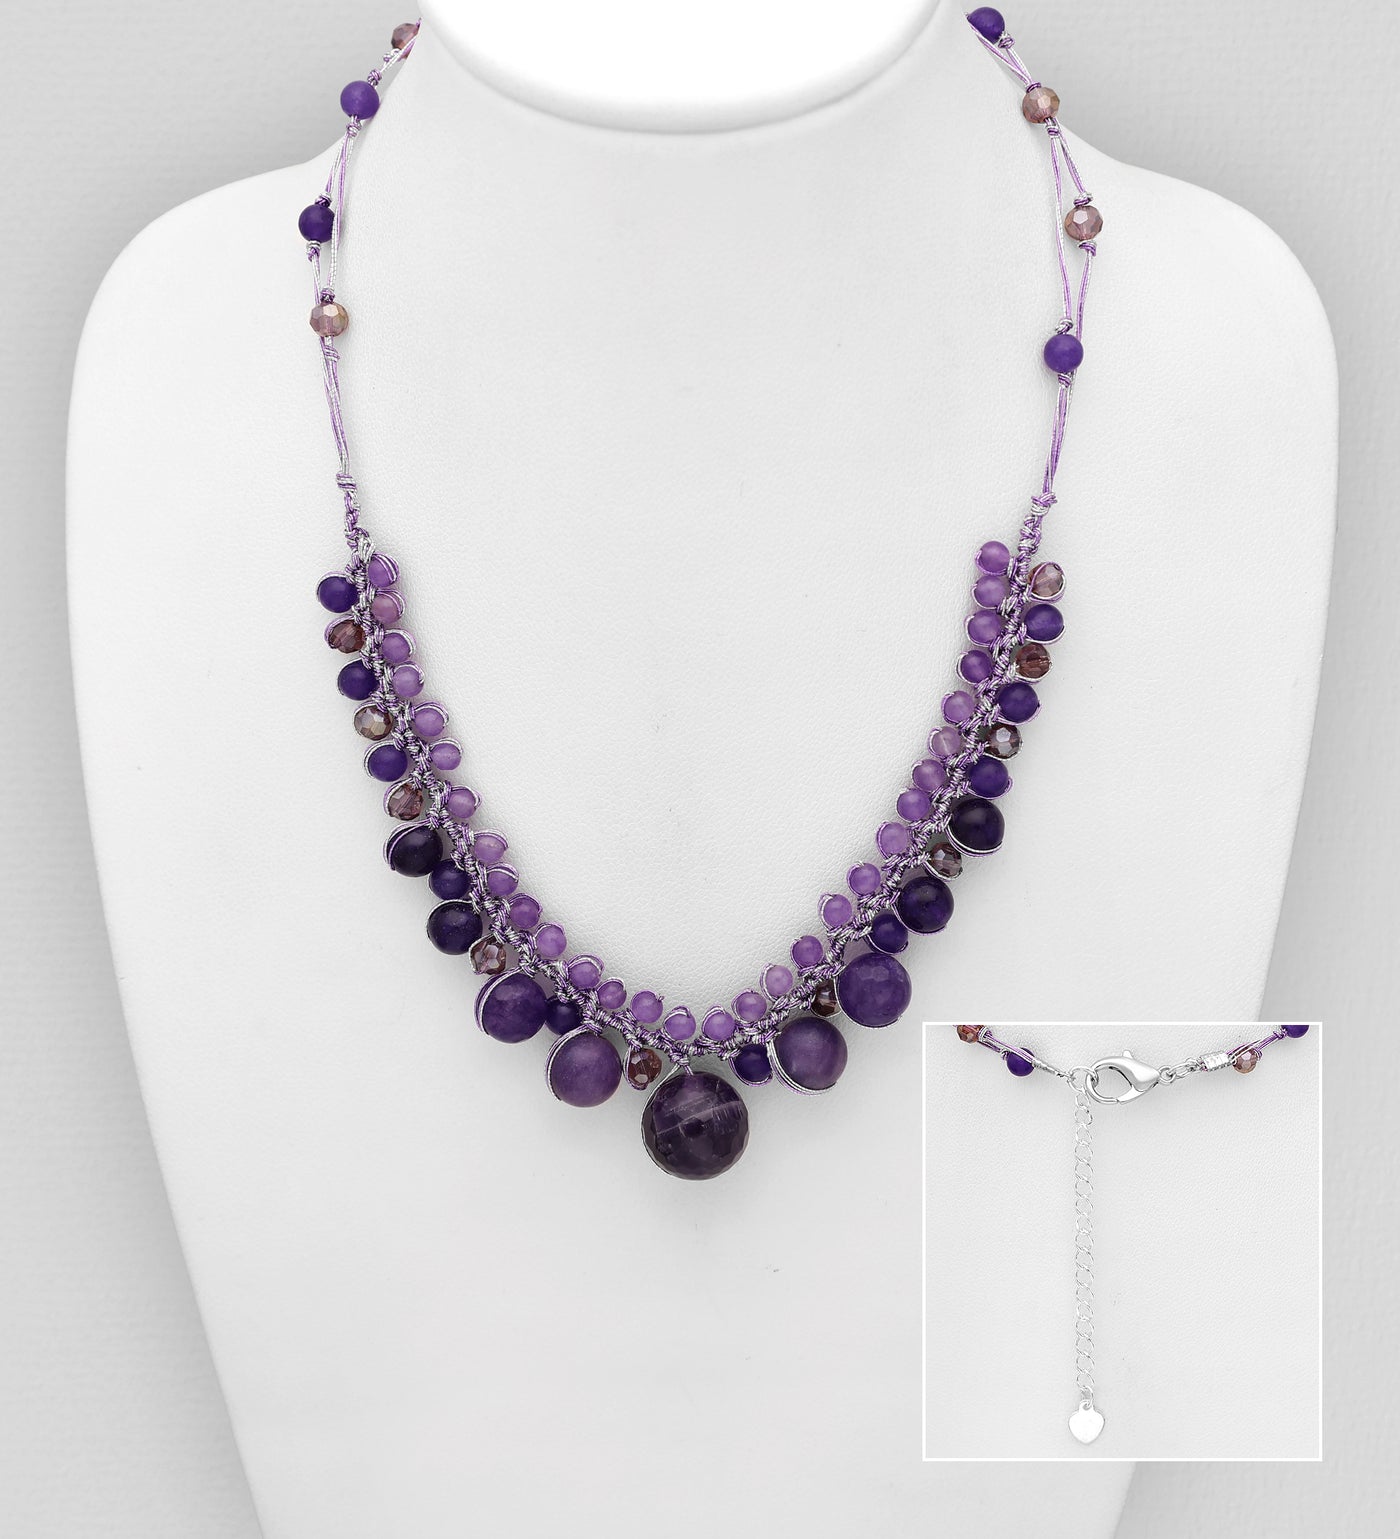 Purple Jade, Amethyst, & Crystal Necklace 18" - 20"